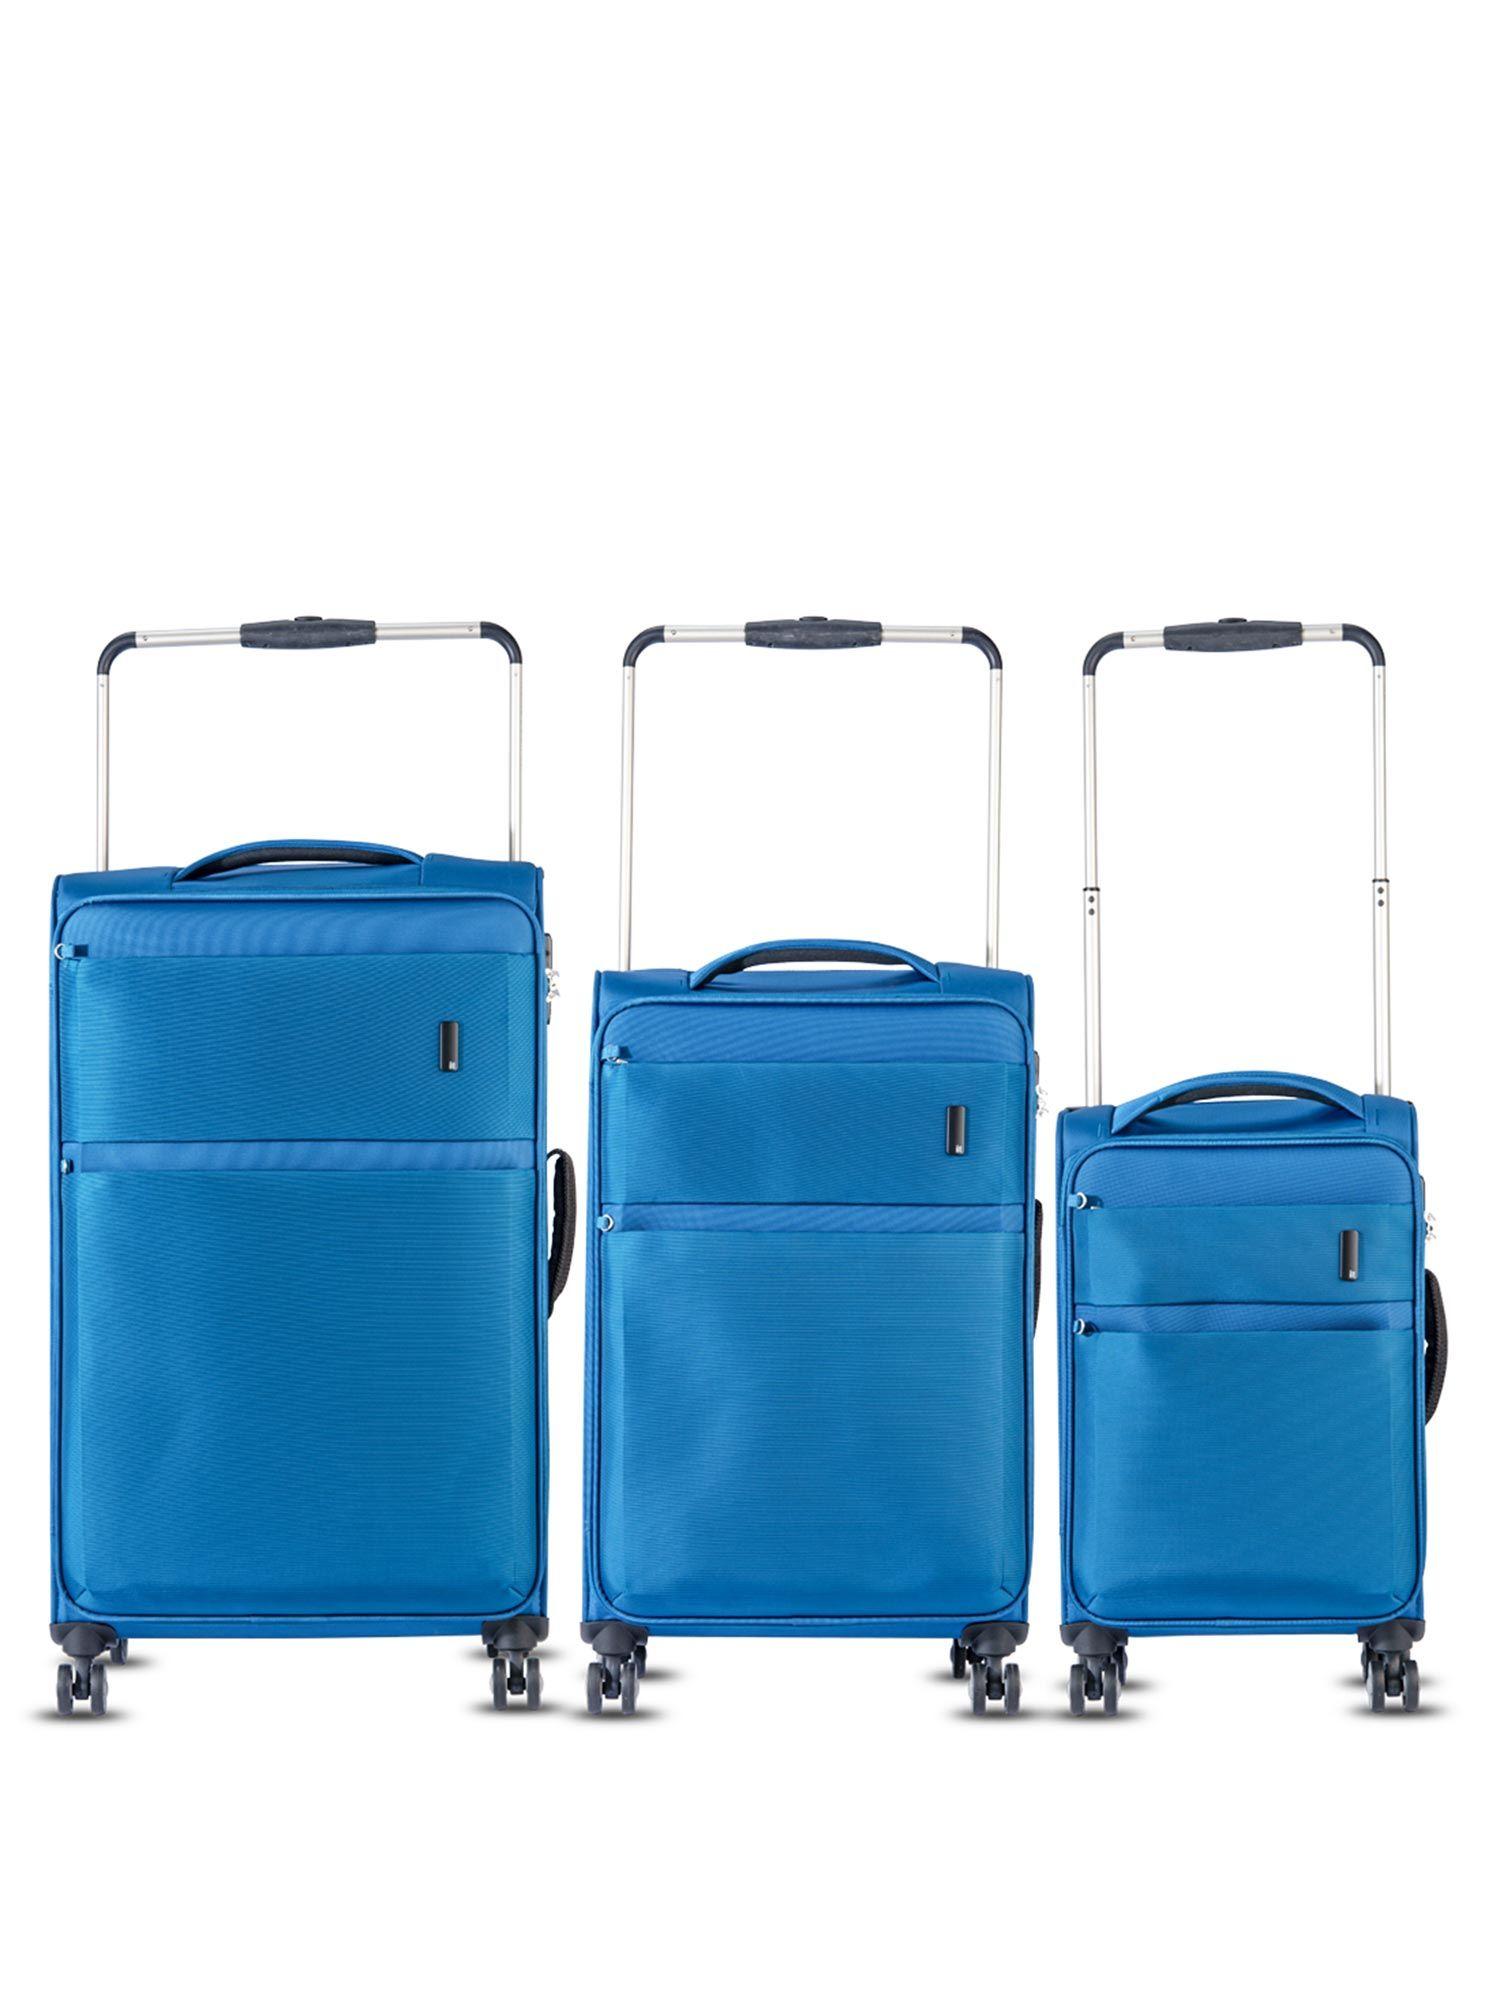 debonair-trolley-two-tone-blue-(pack-of-3)